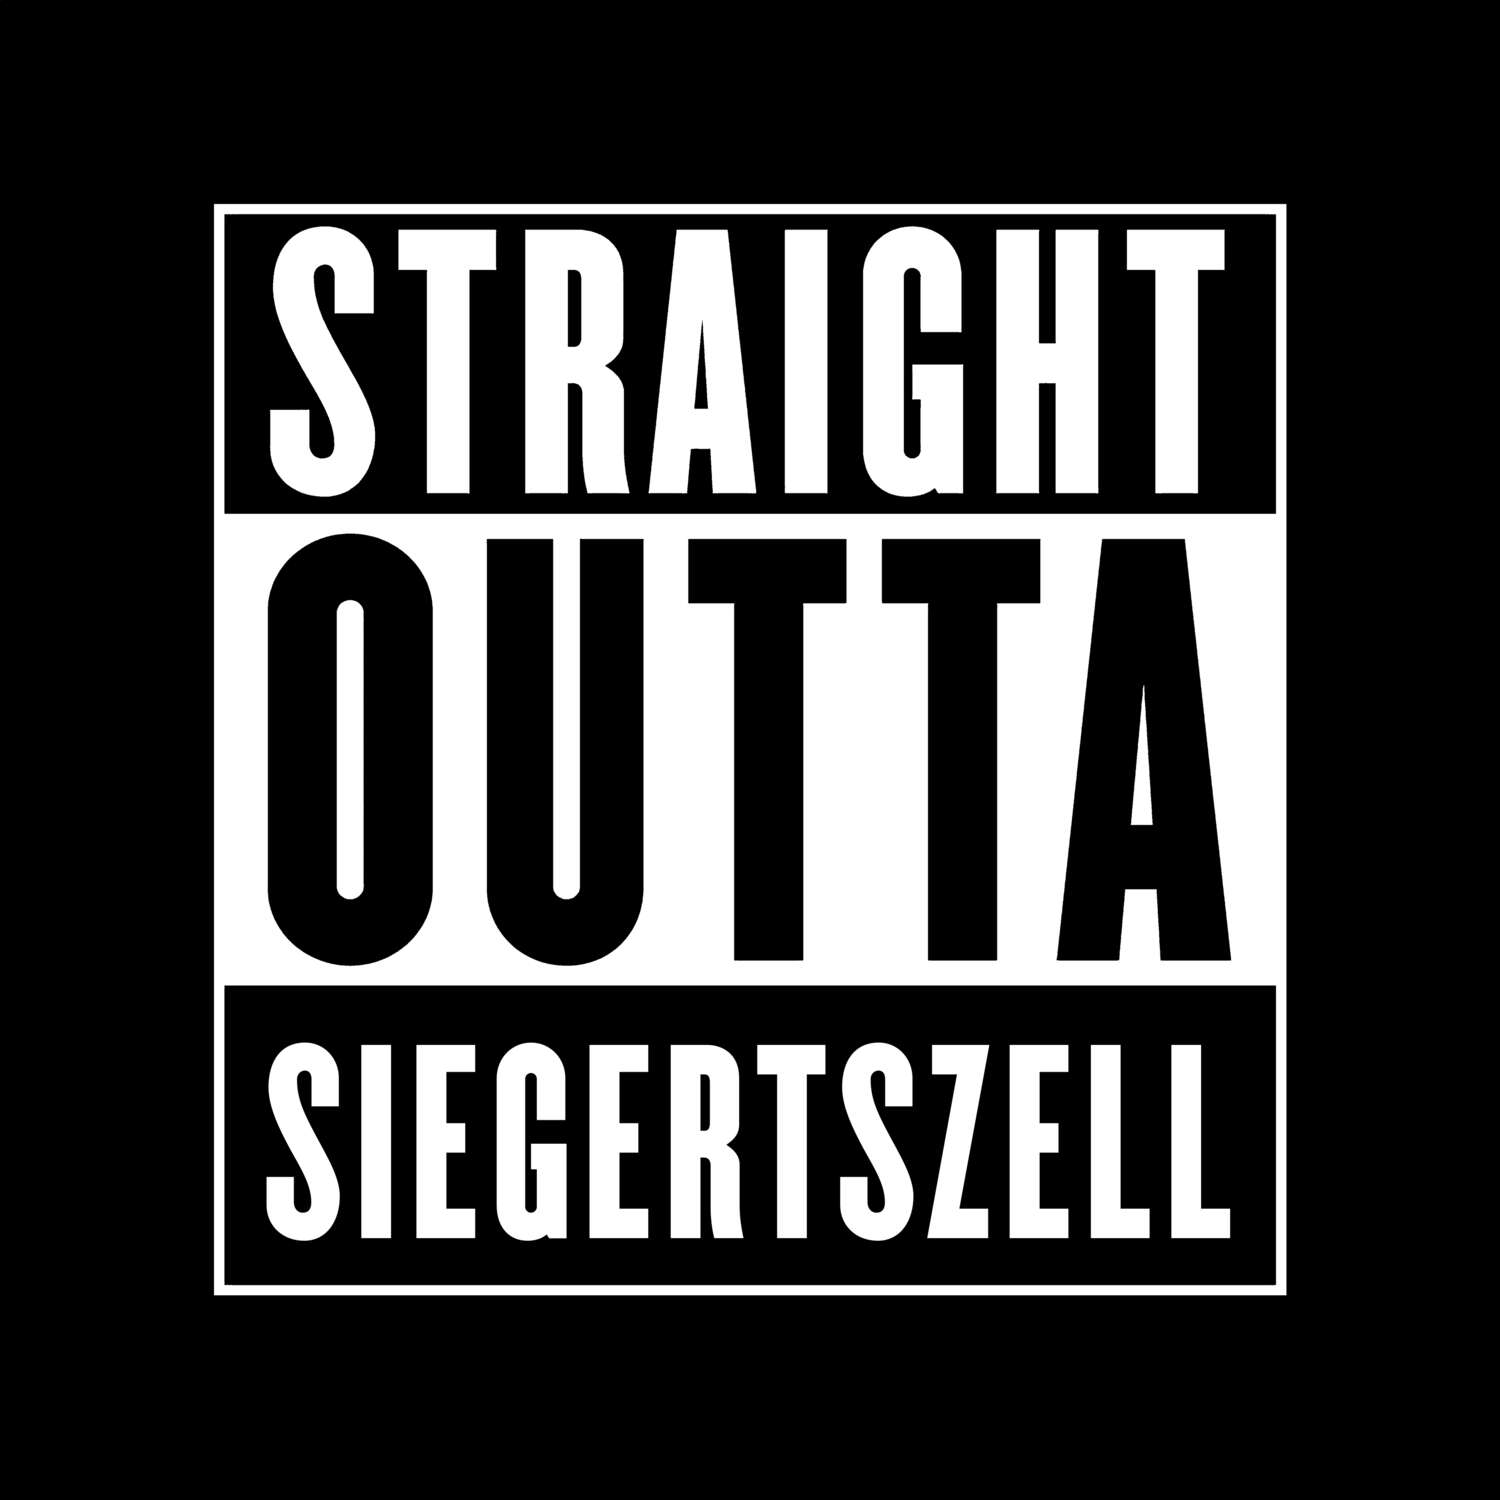 Siegertszell T-Shirt »Straight Outta«